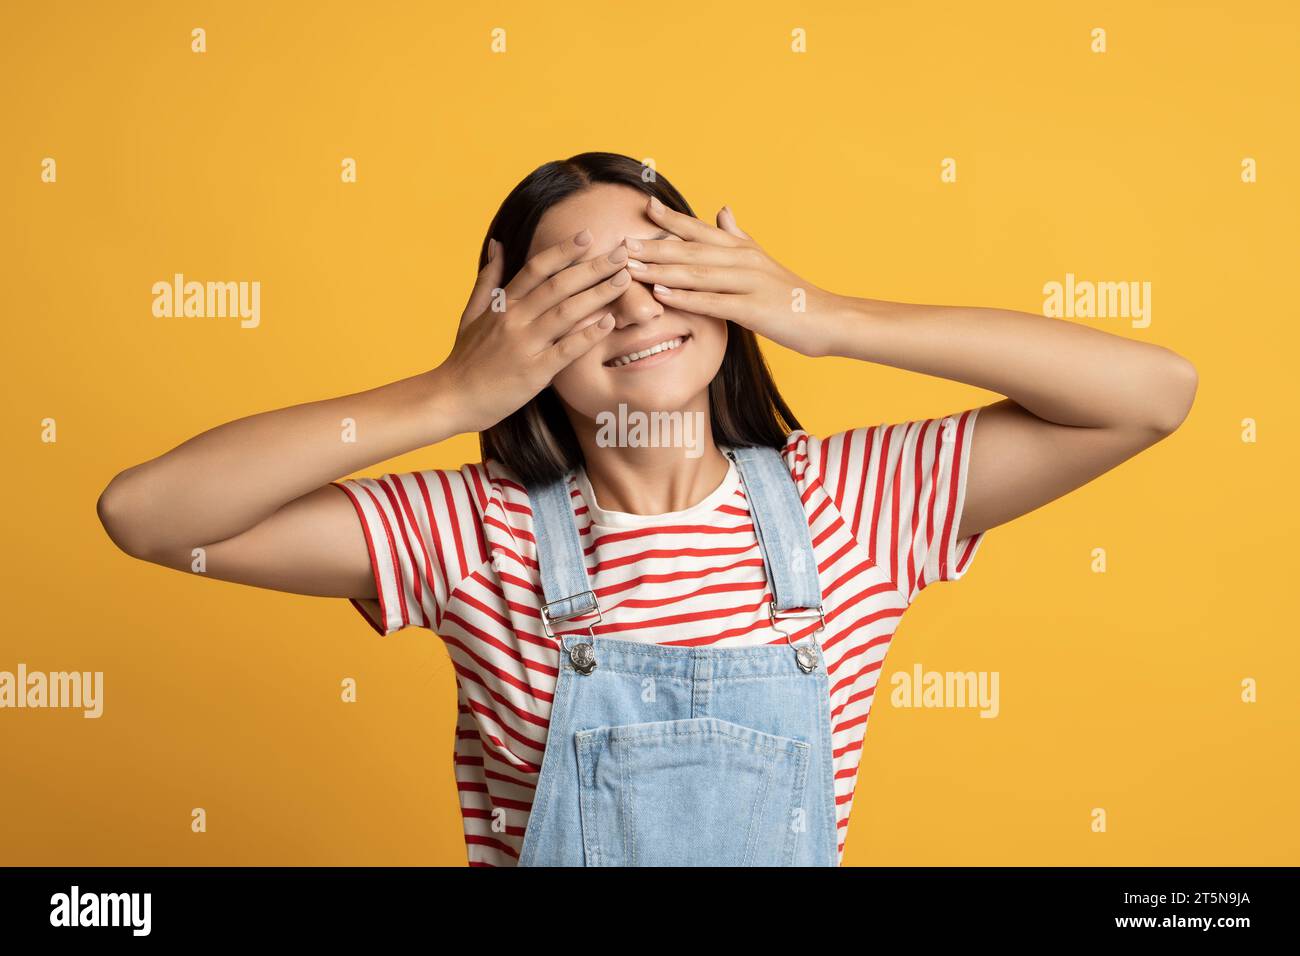 Ragazza adolescente felice che chiude gli occhi con le mani in posa su sfondo giallo giocando a nascondino. Foto Stock